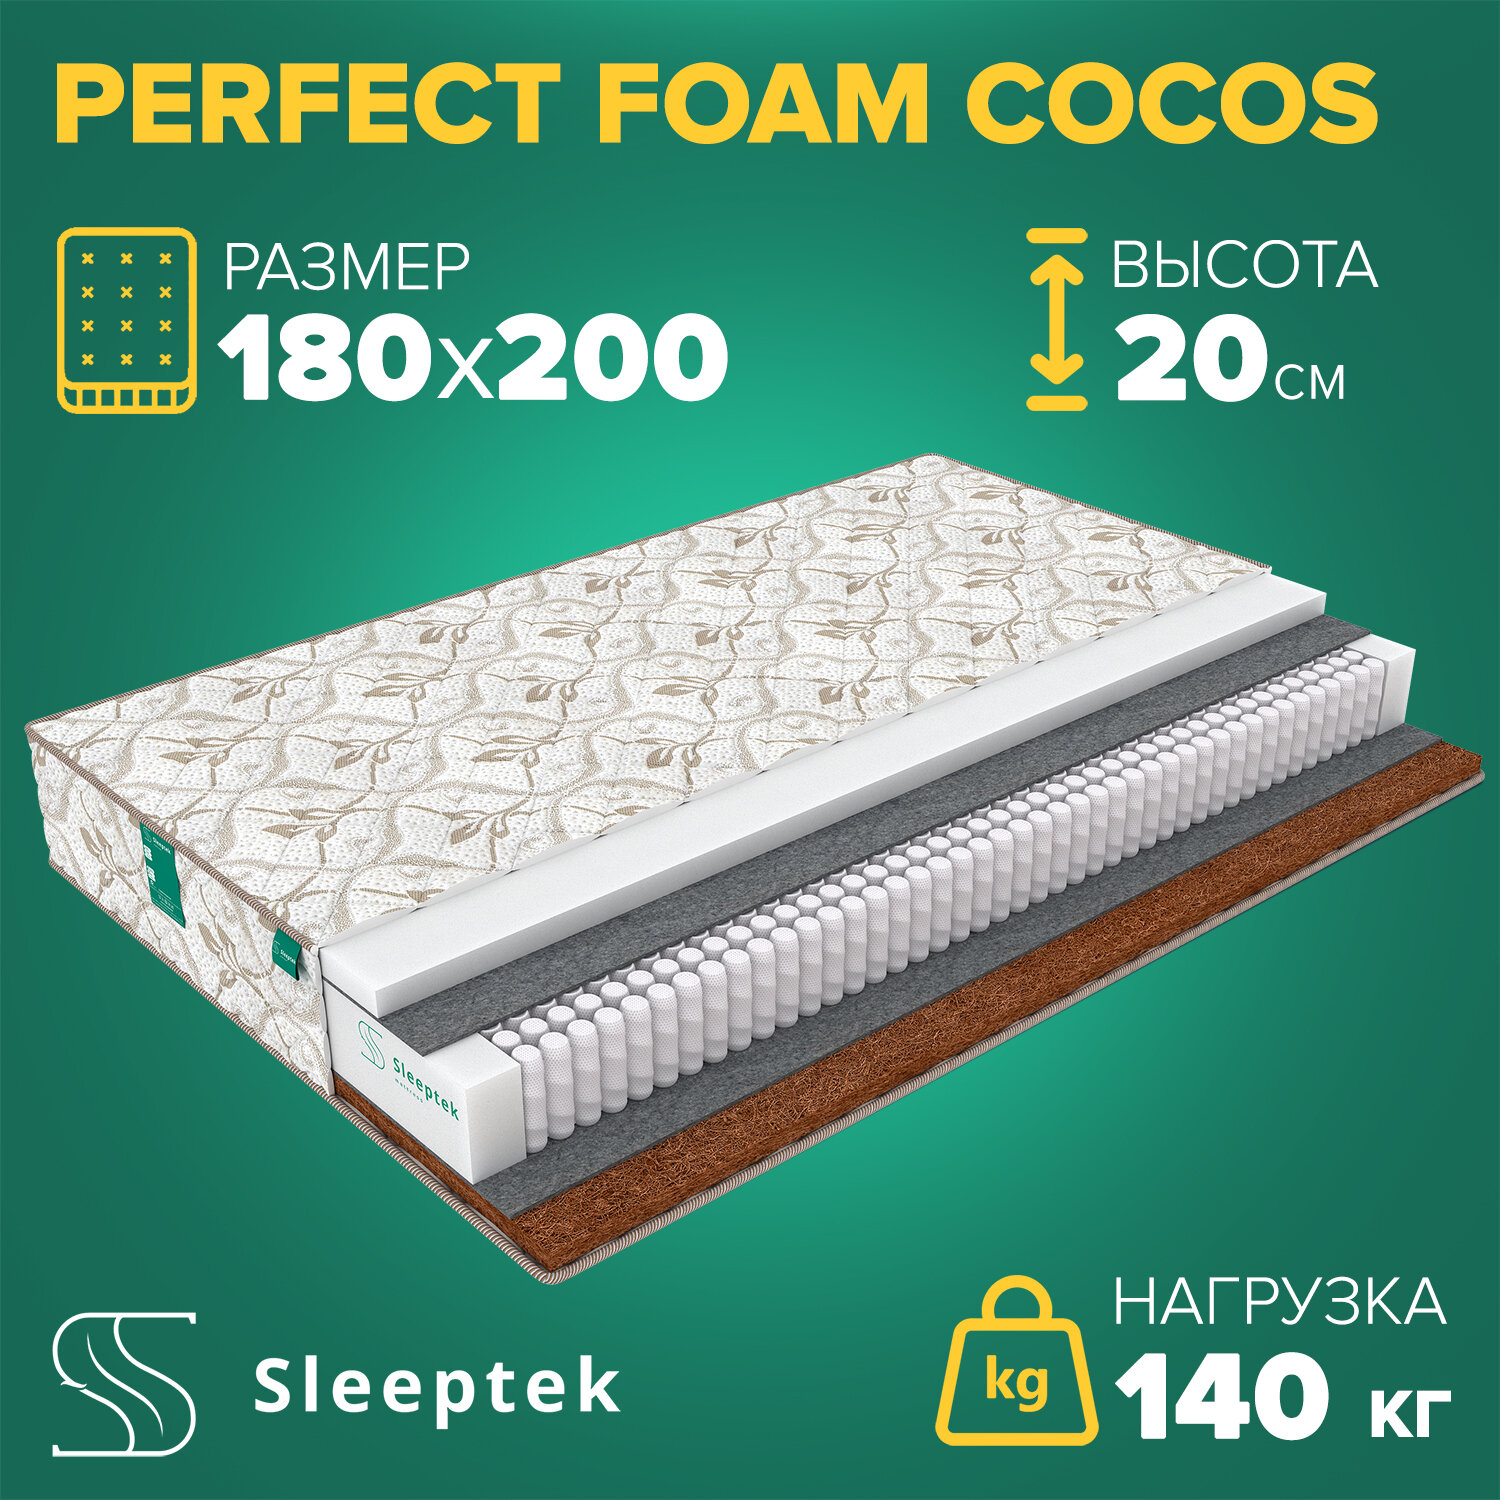  Sleeptek Perfect Foam Cocos 180200